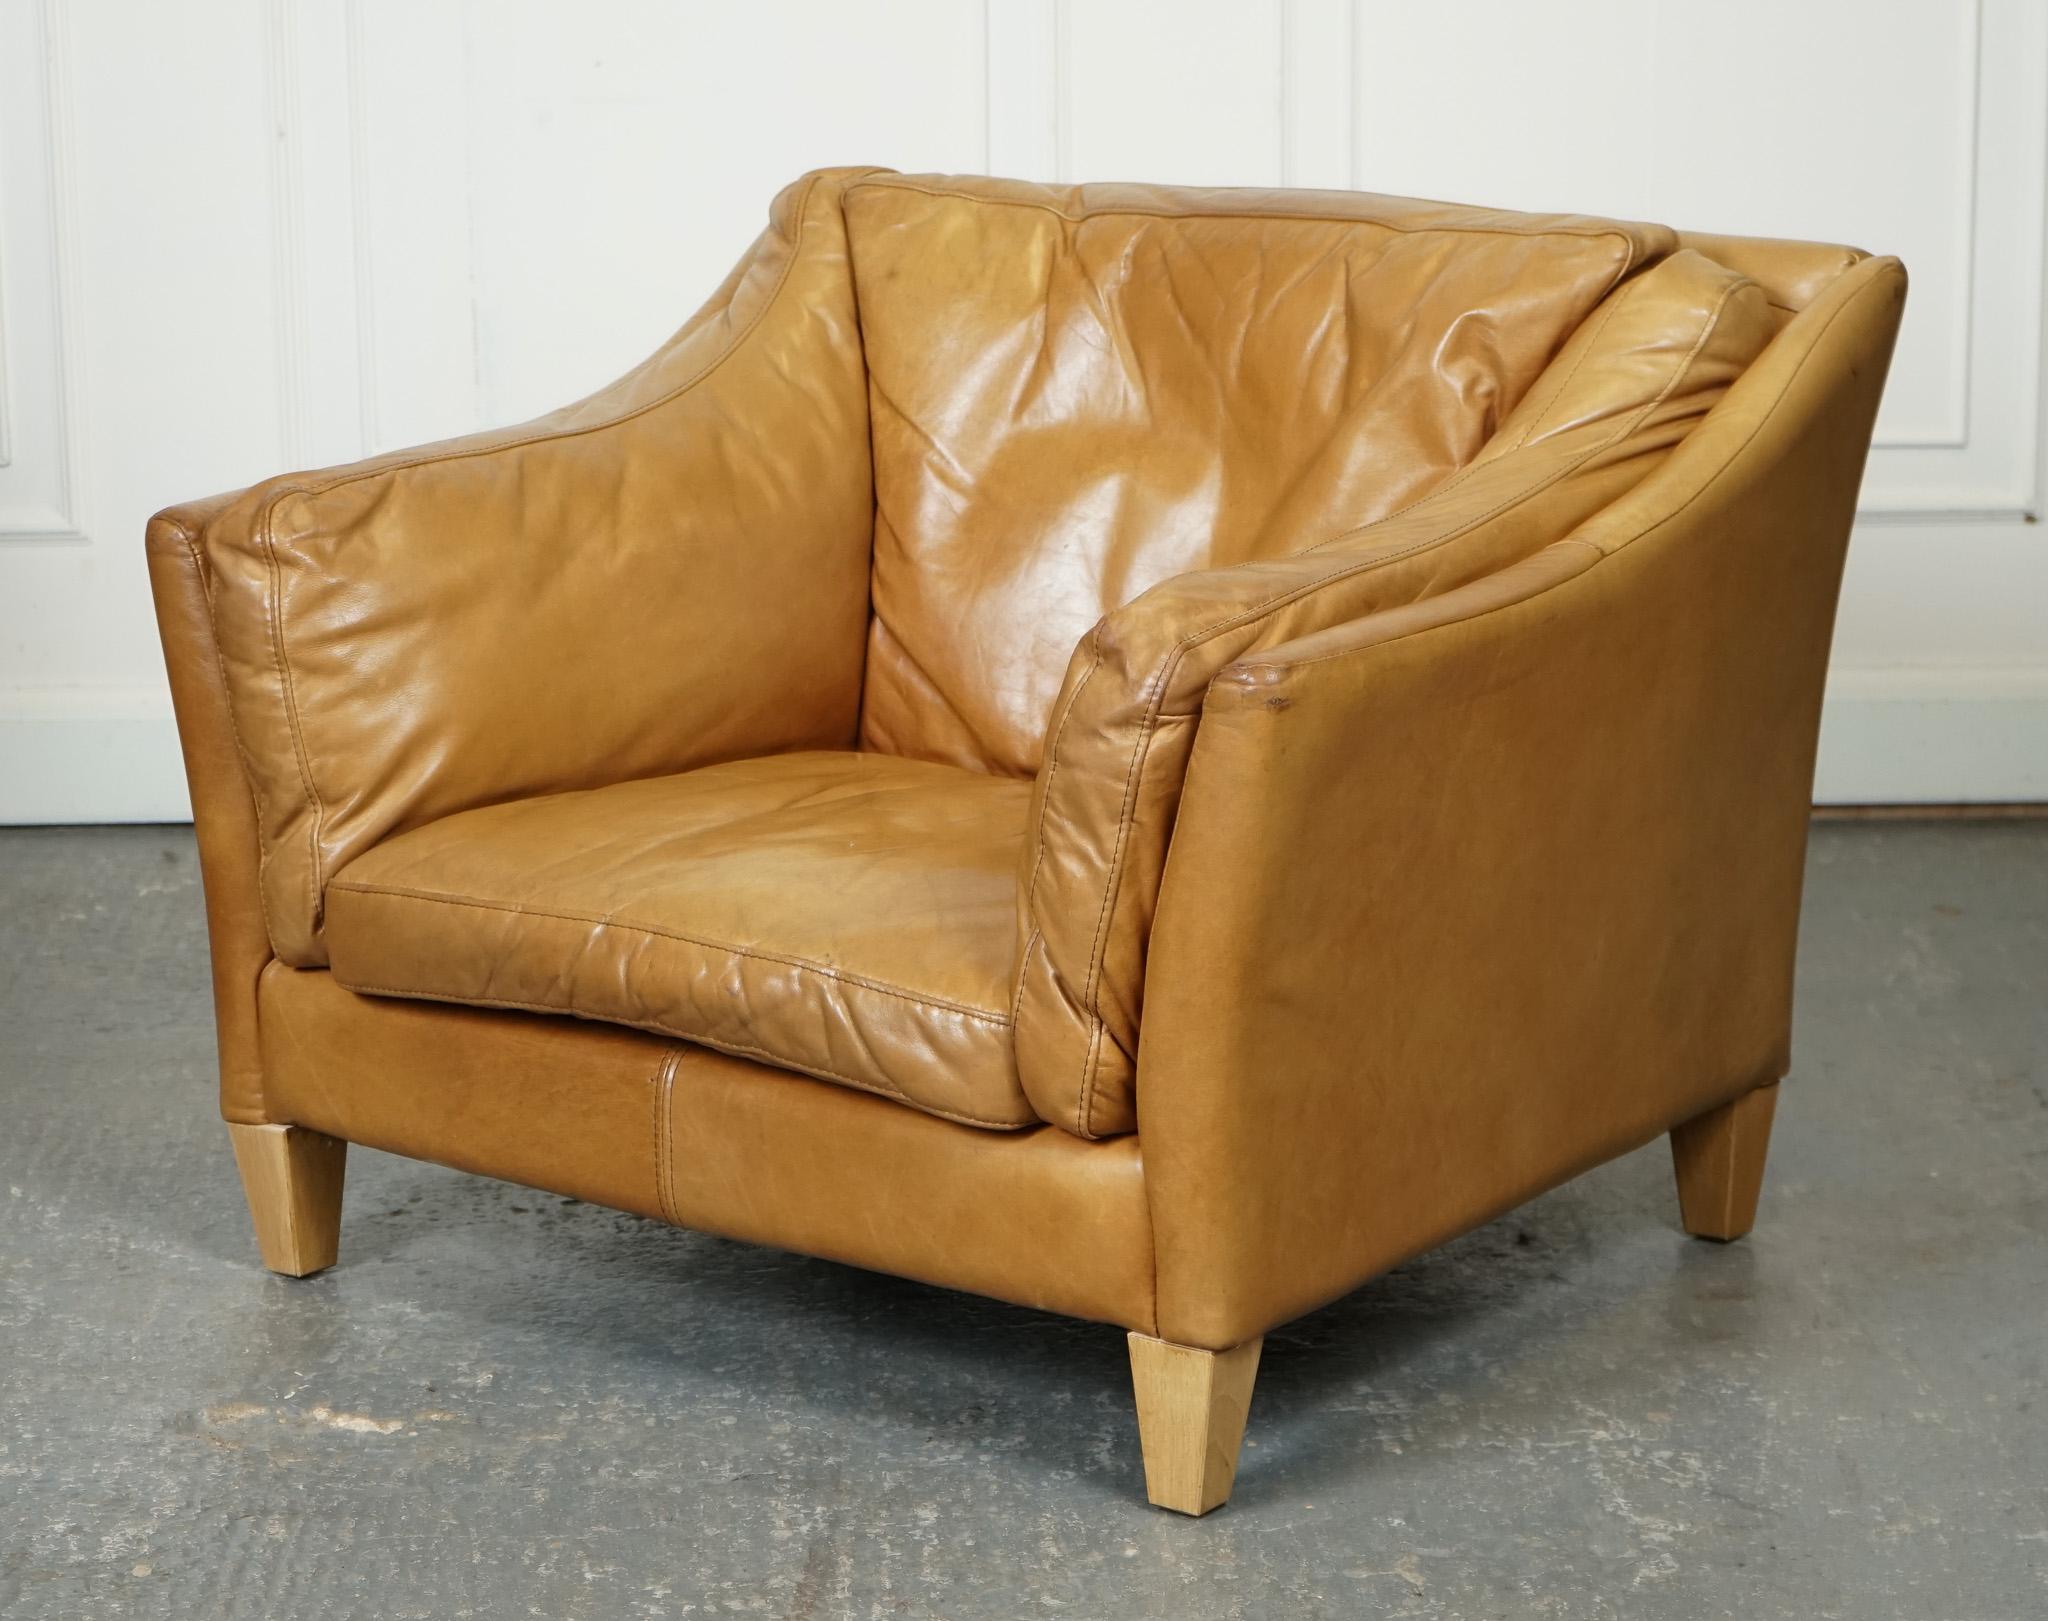 
Nous sommes ravis d'offrir à la vente ce magnifique fauteuil en cuir Halo Reggio Tan.

Un meuble compact et confortable. Fabriqué avec un revêtement en cuir tan de haute qualité, ce fauteuil dégage une allure intemporelle et élégante.

Malgré sa